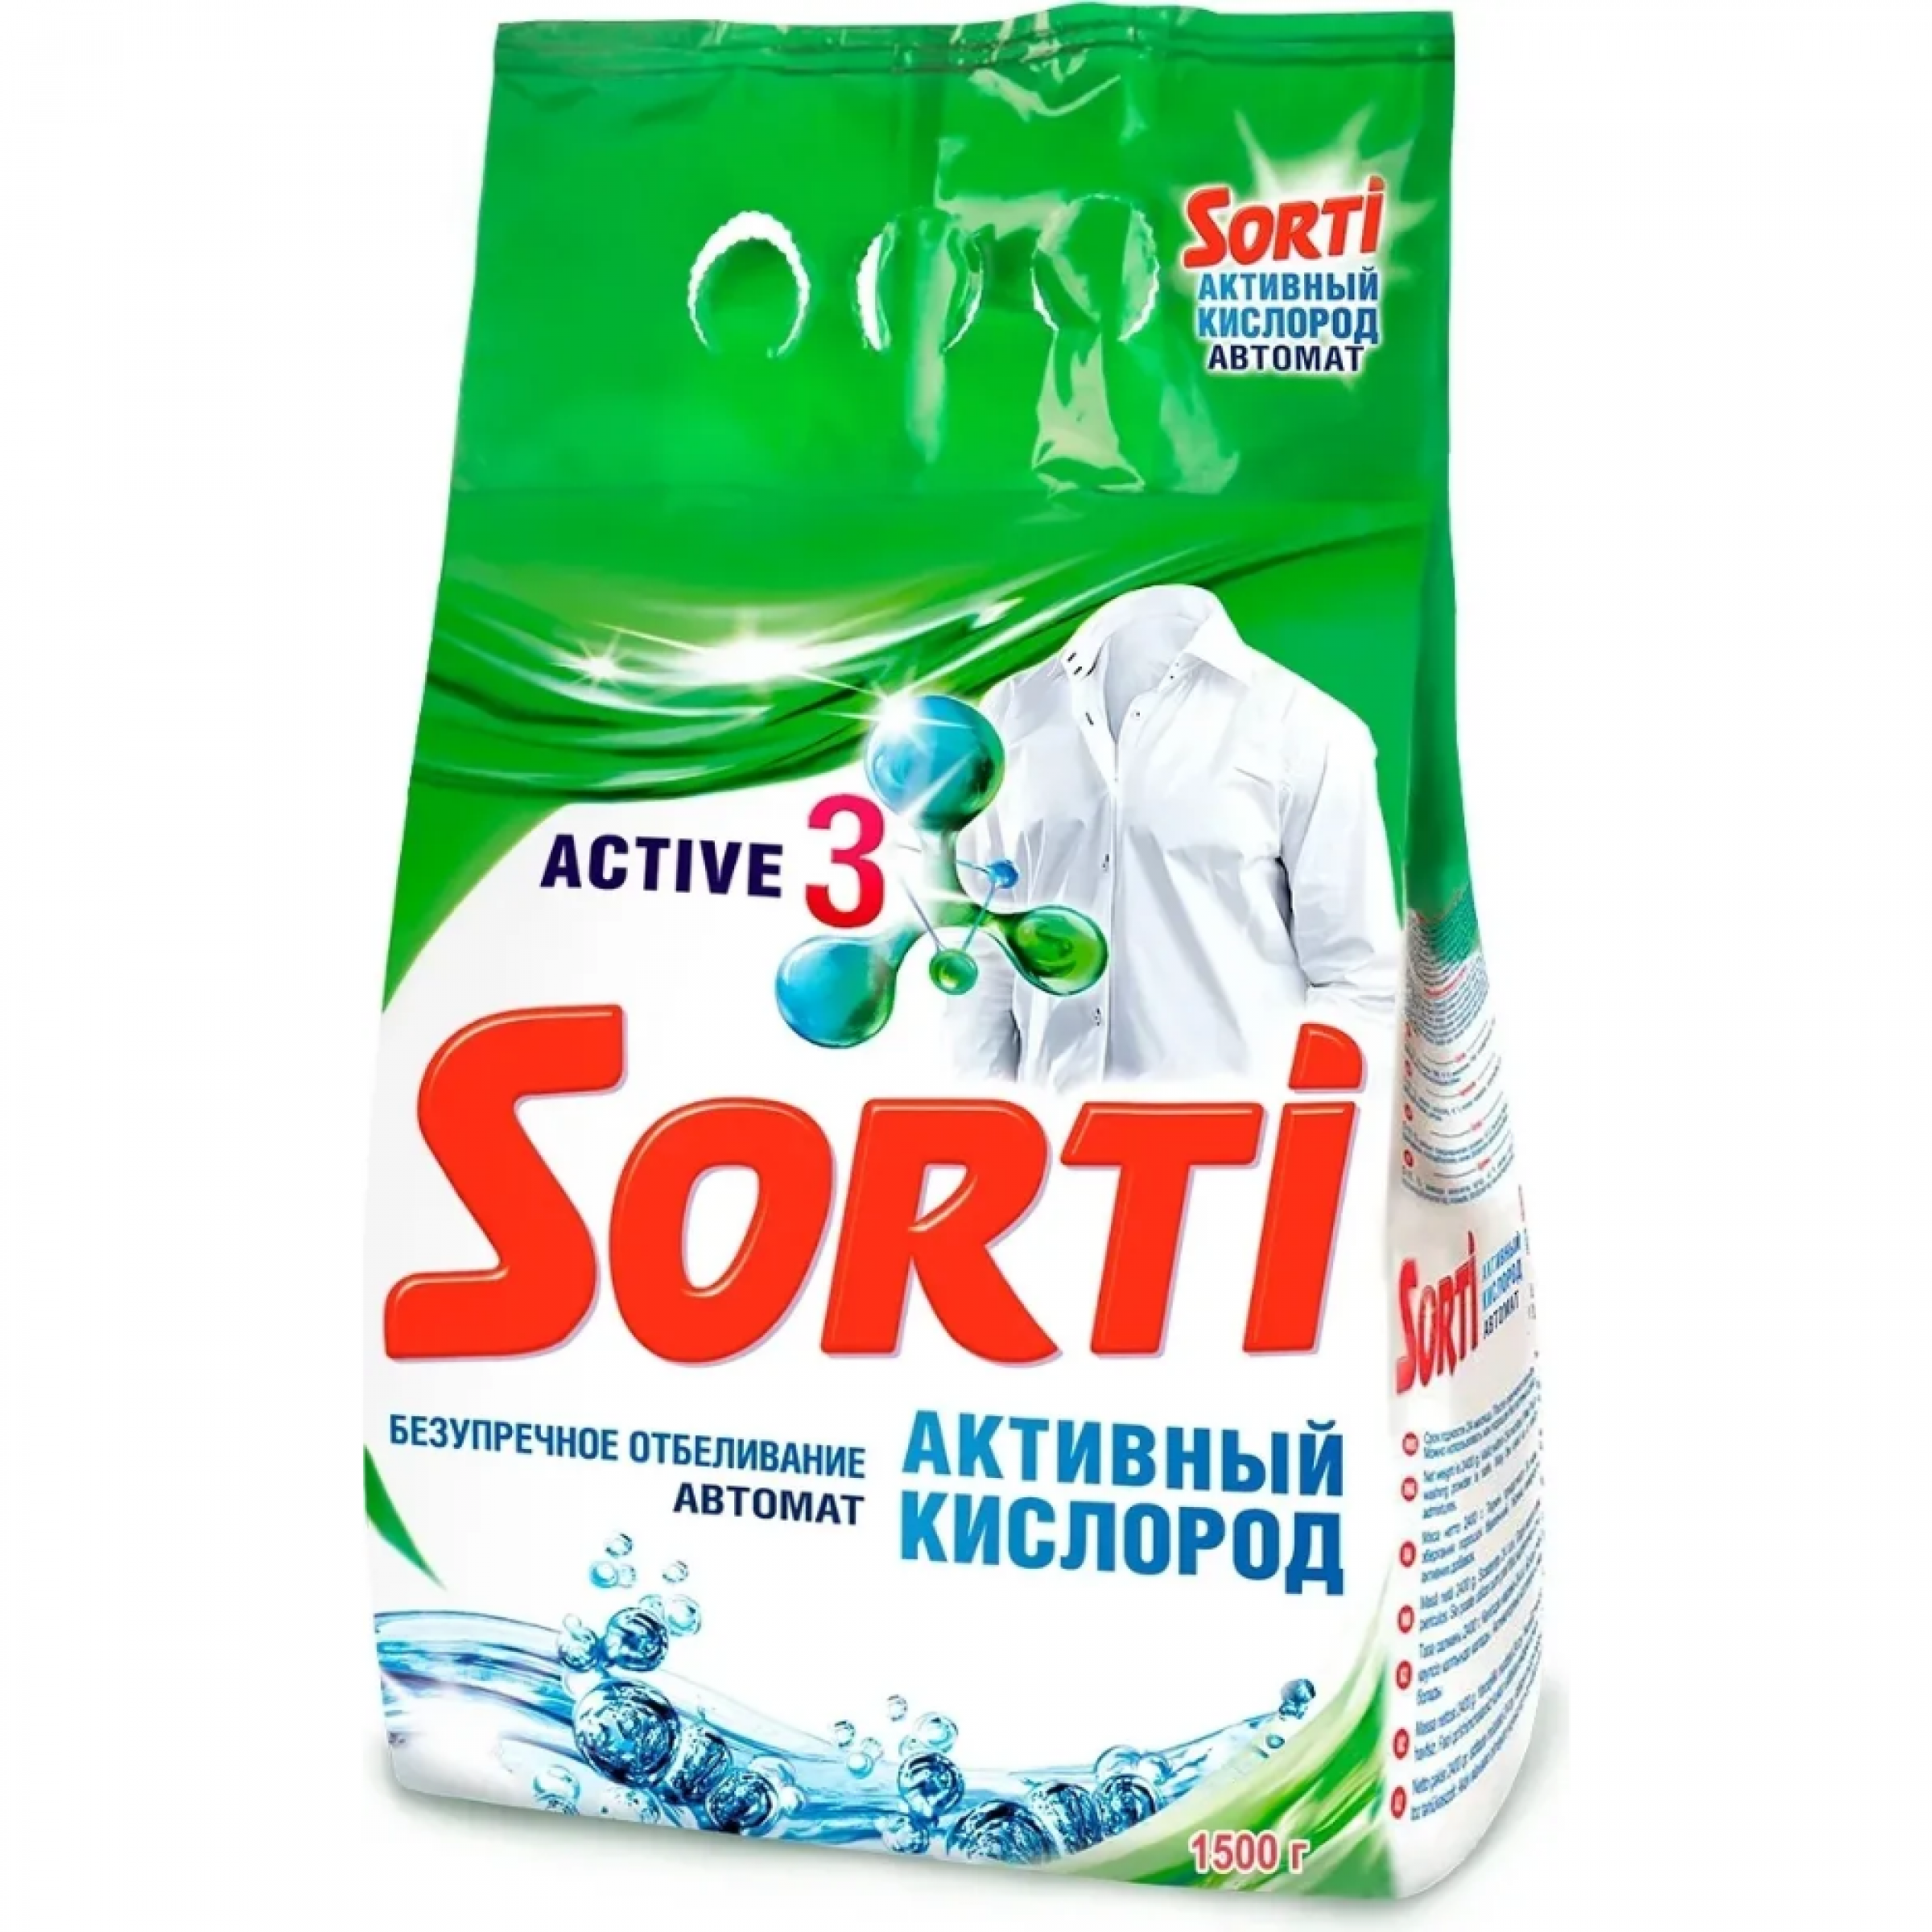 Стиральный порошок Sorti автомат Активный Кислород, 1,5кг